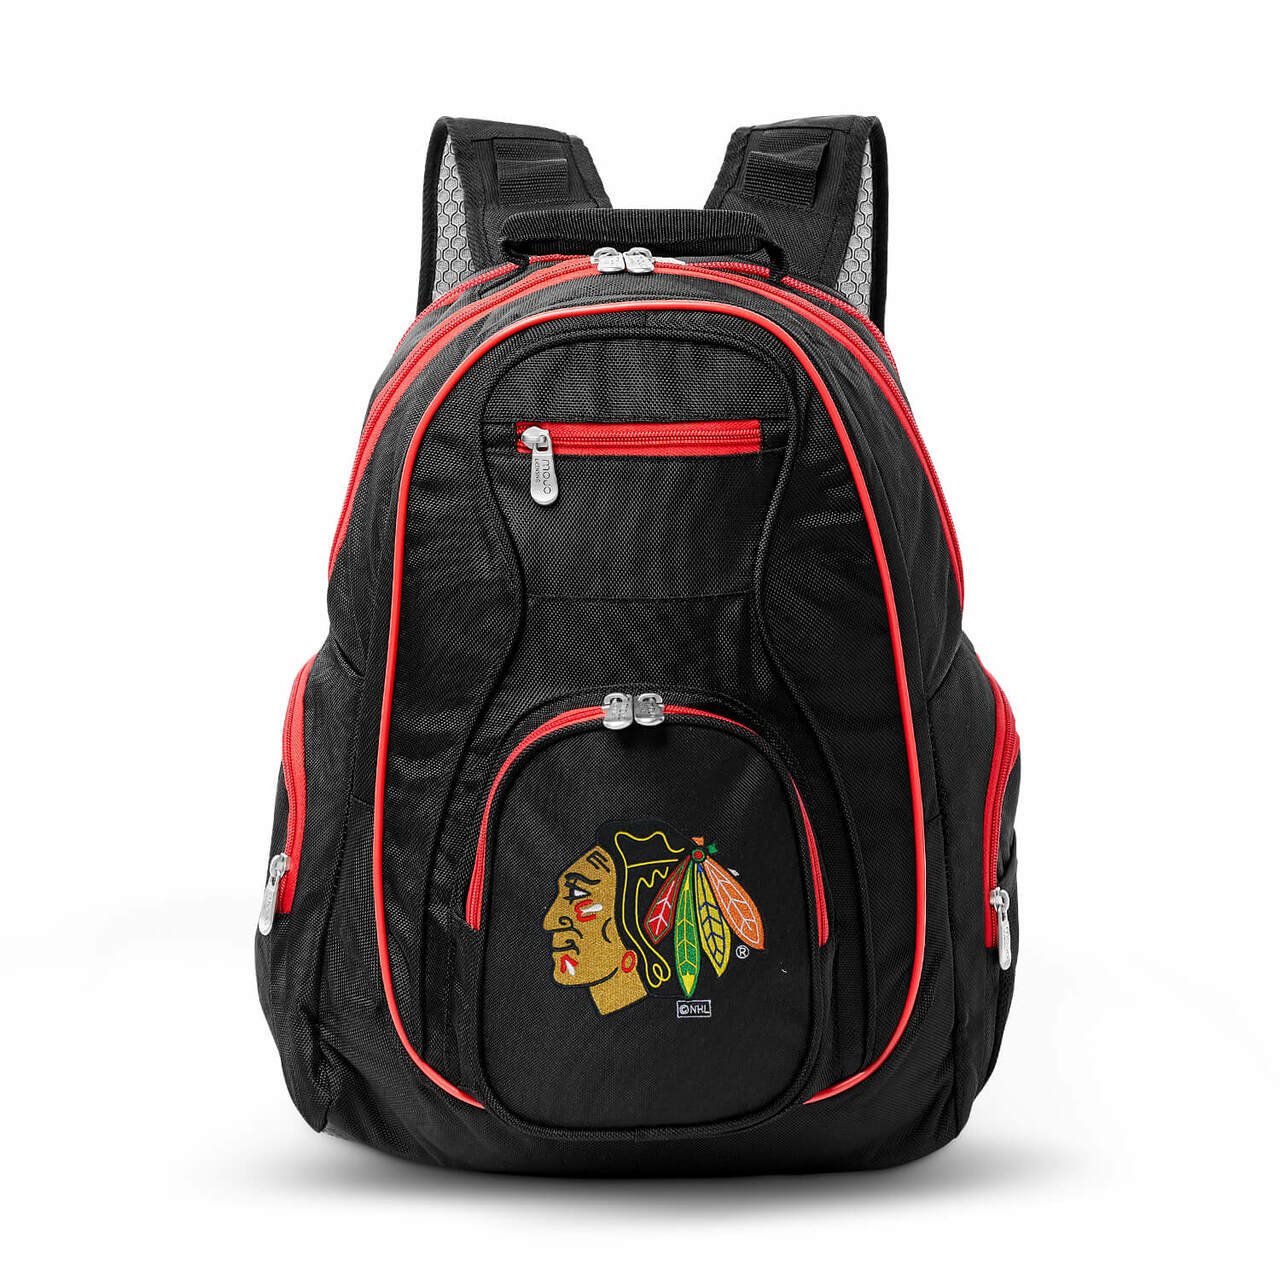 Blackhawks Backpack | Chicago Blackhawks Laptop Backpack